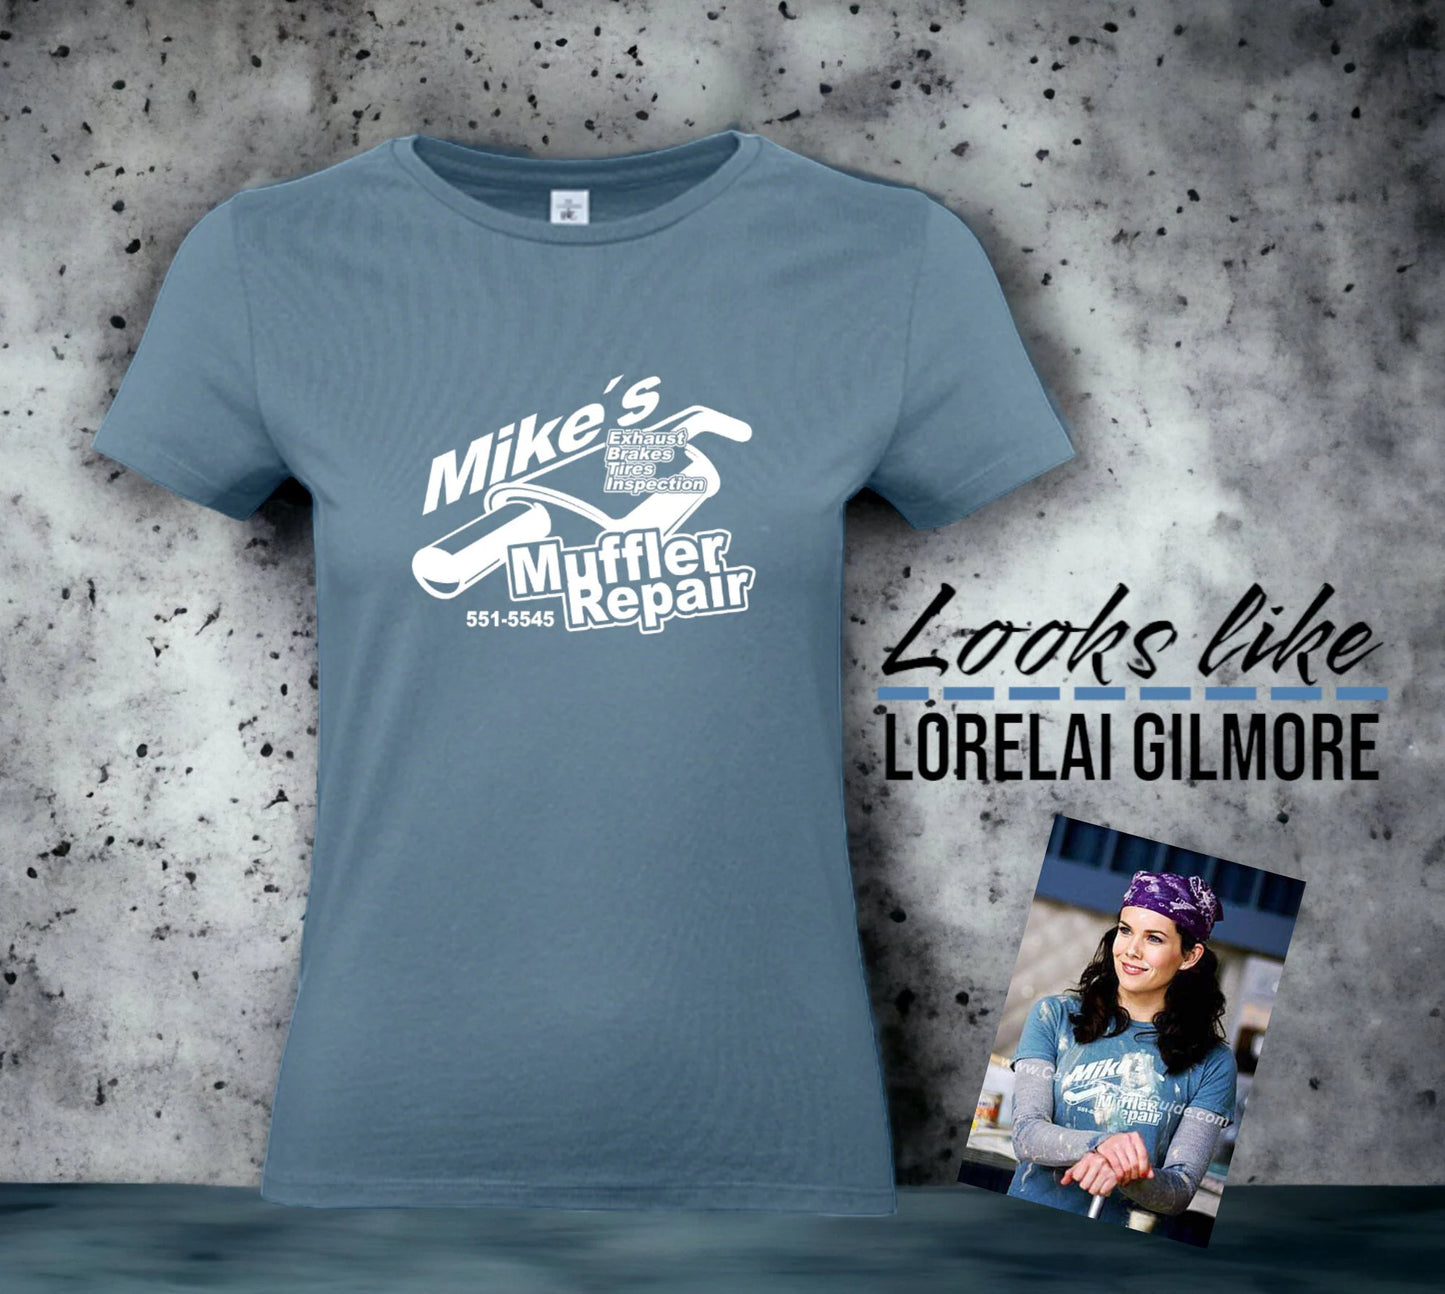 Damenshirt im Lorelai Gilmore Style Mikes Muffler Repair